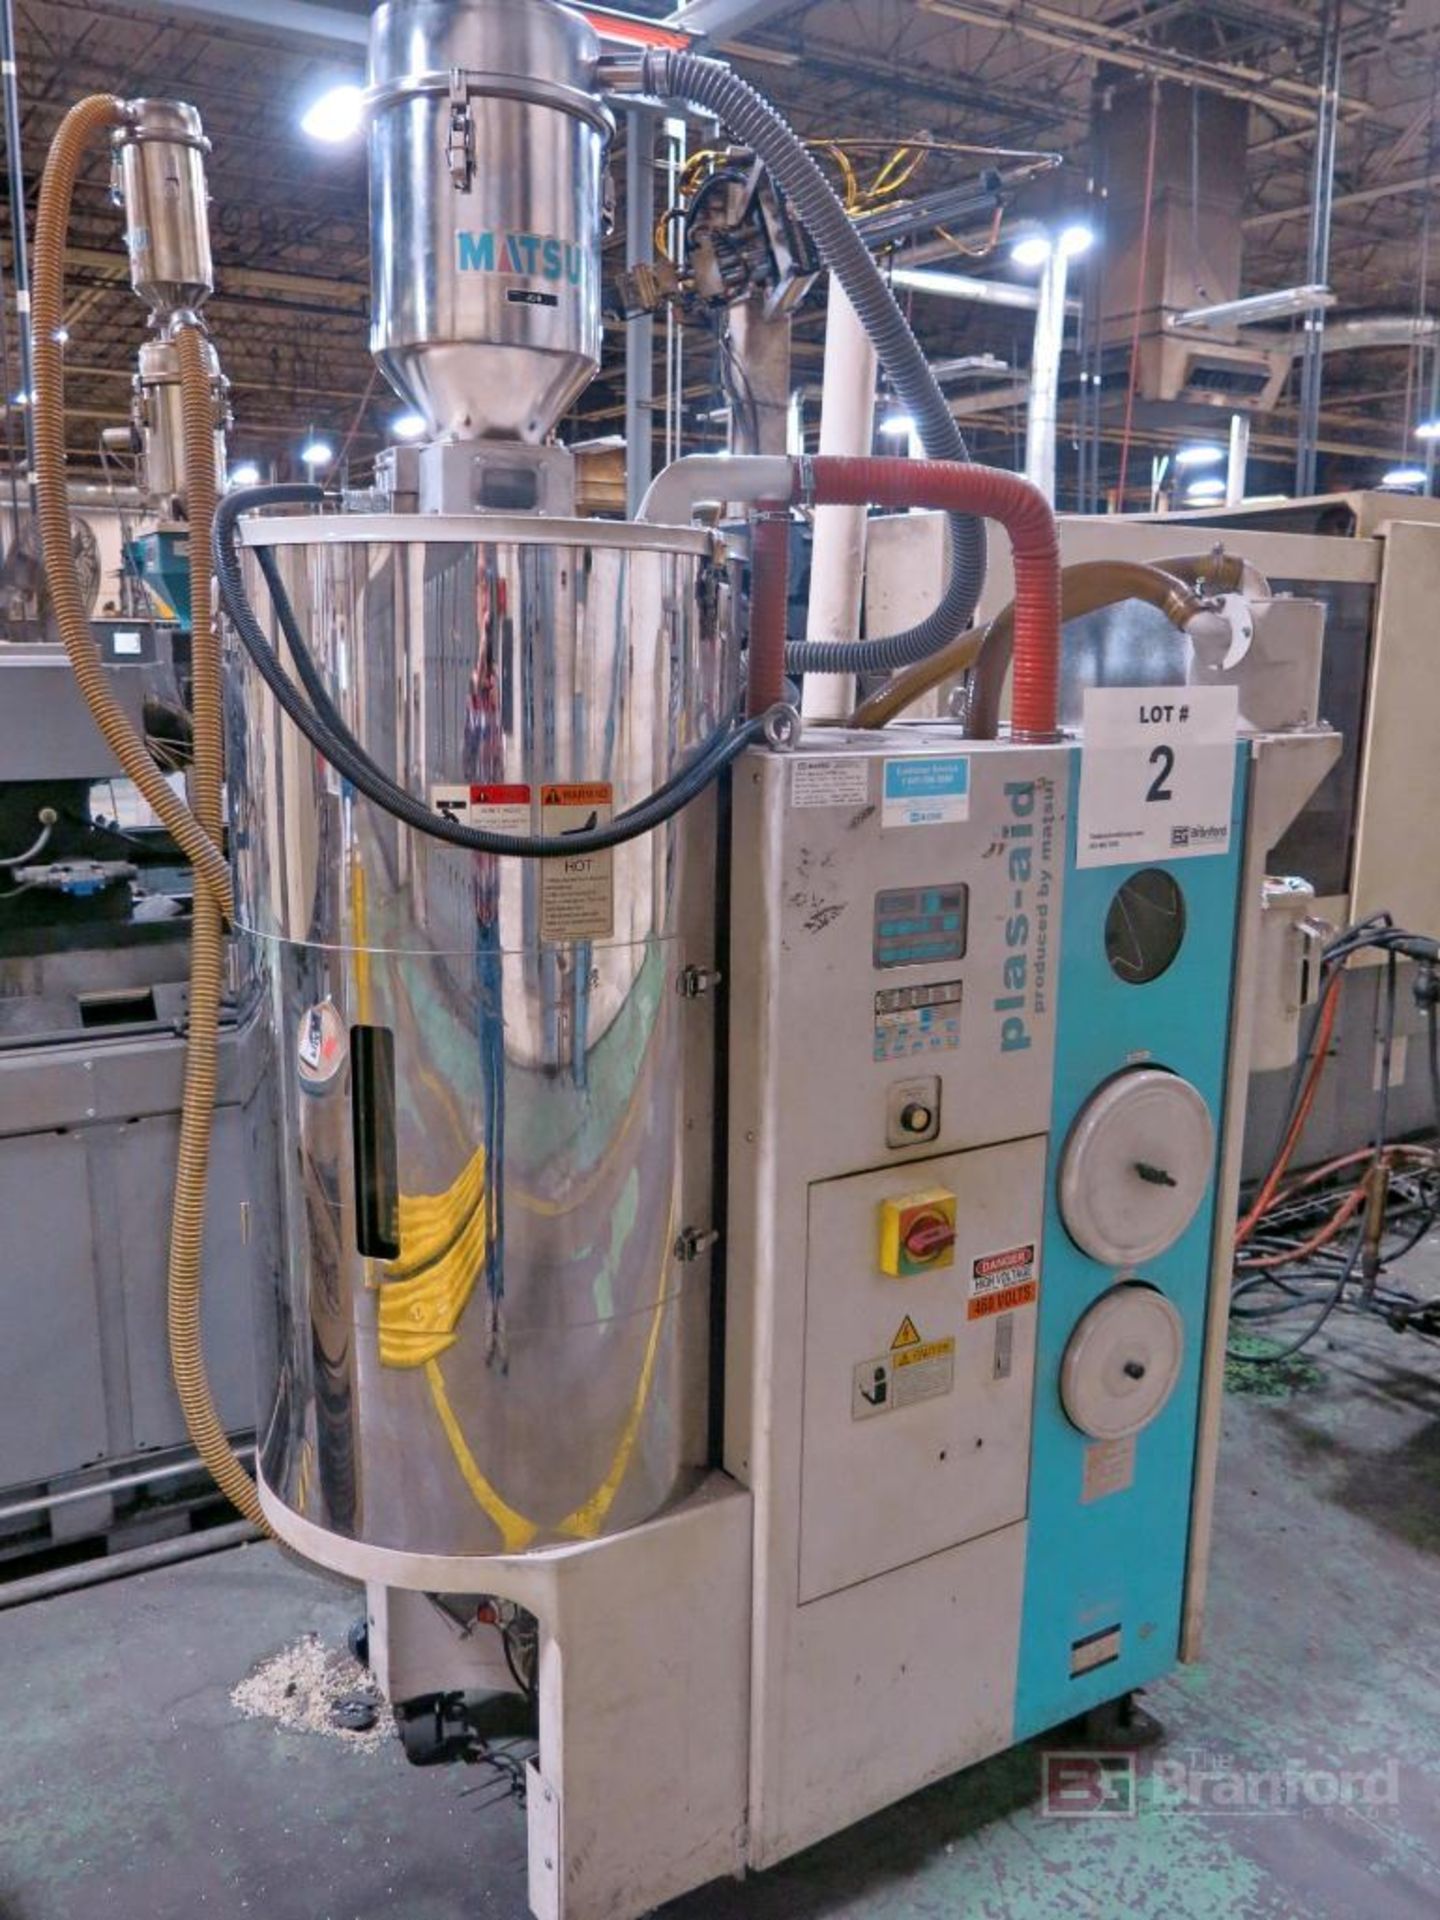 Matsui Model MJ3-100-U Plas-Aid Resin Material Dryer - Image 2 of 4